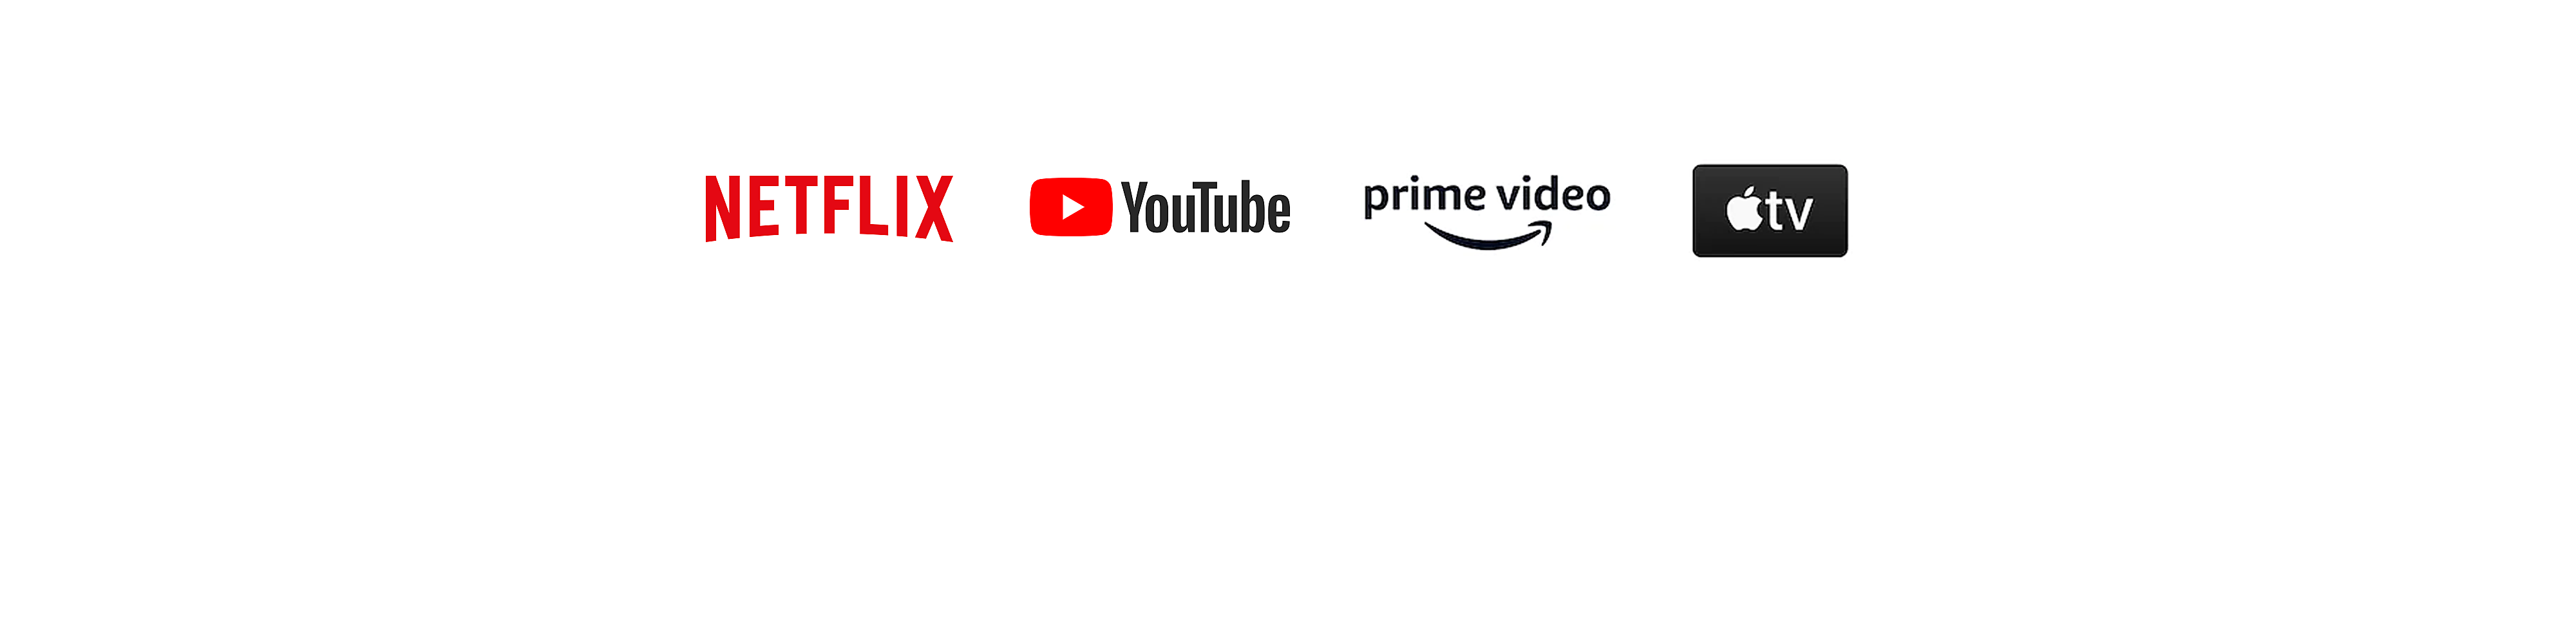 Logoer for Netflix, YouTube, Amazon Prime Video og Apple TV